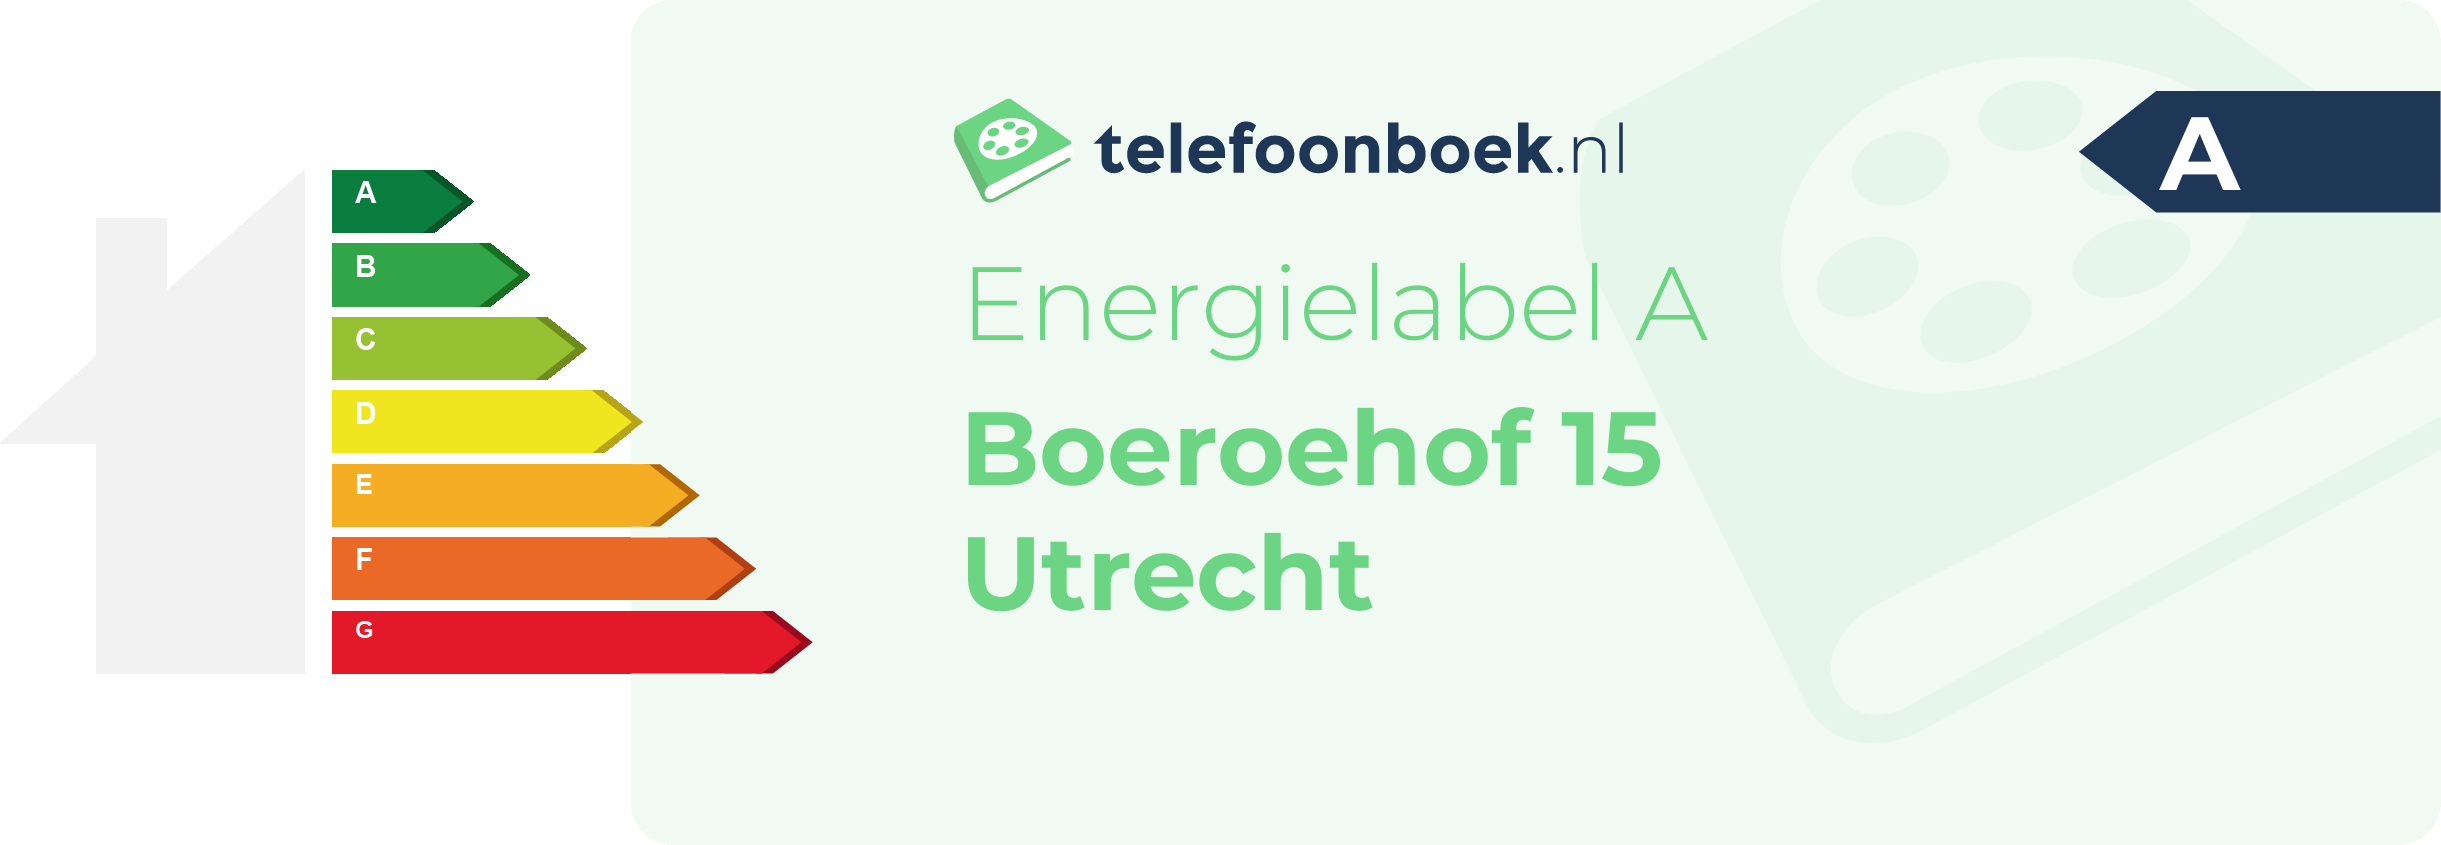 Energielabel Boeroehof 15 Utrecht